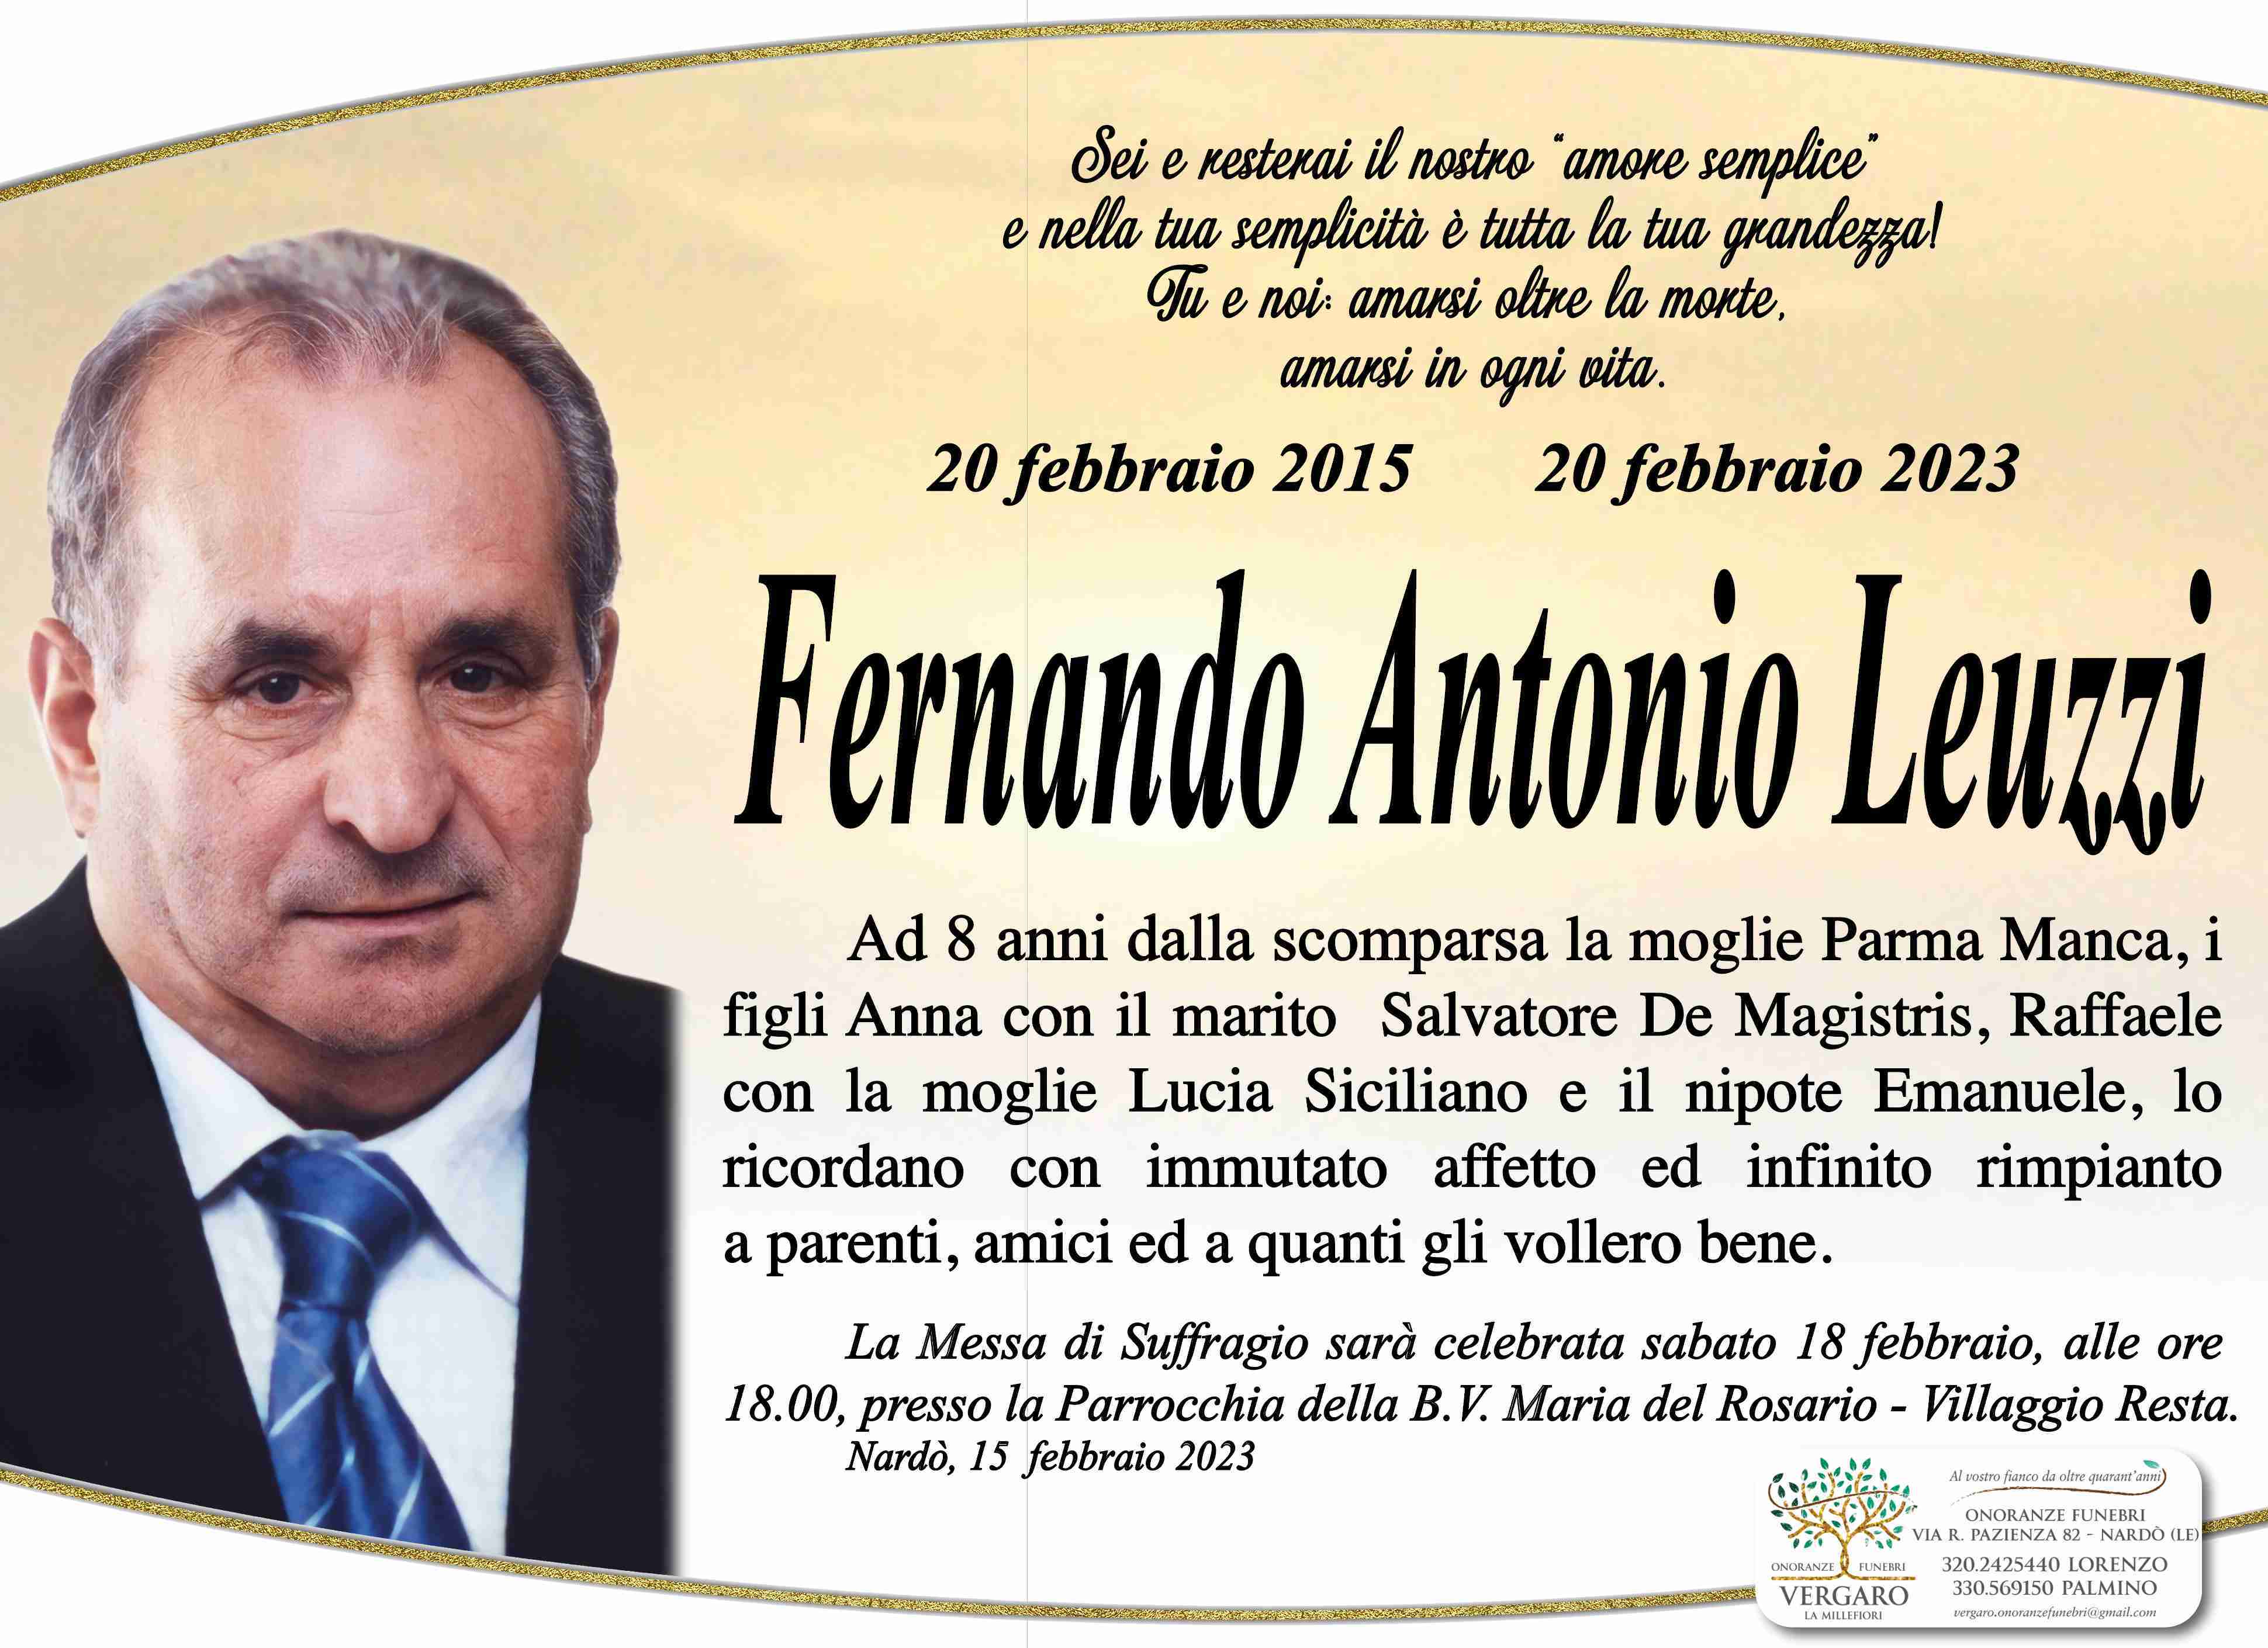 Fernando Antonio Leuzzi